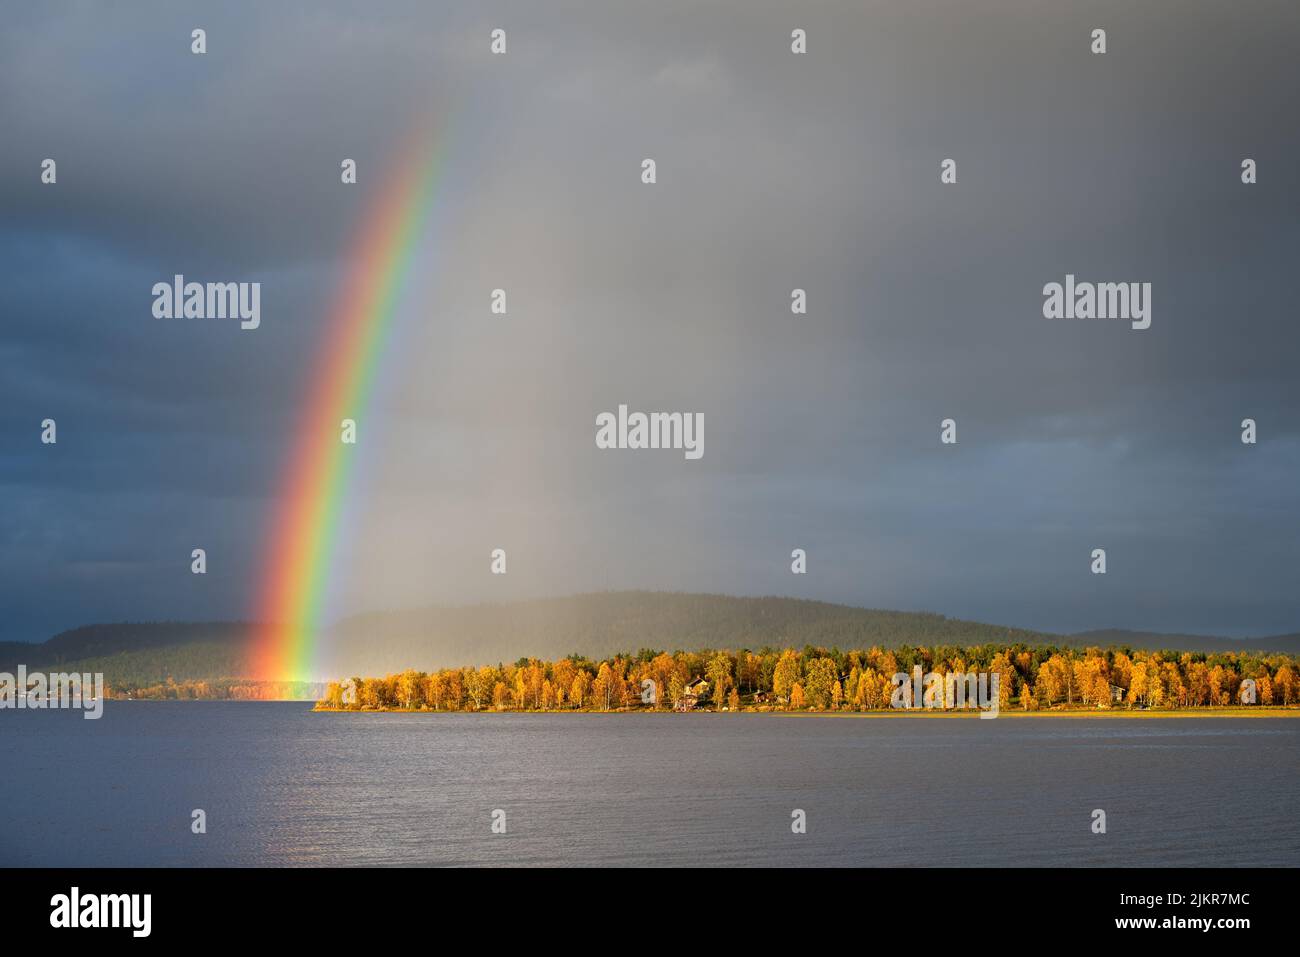 Arc-en-ciel au-dessus du paysage d'automne, ciel et lumière spectaculaires, arbres de forêt aux couleurs d'automne. Laponie, Finlande. Banque D'Images